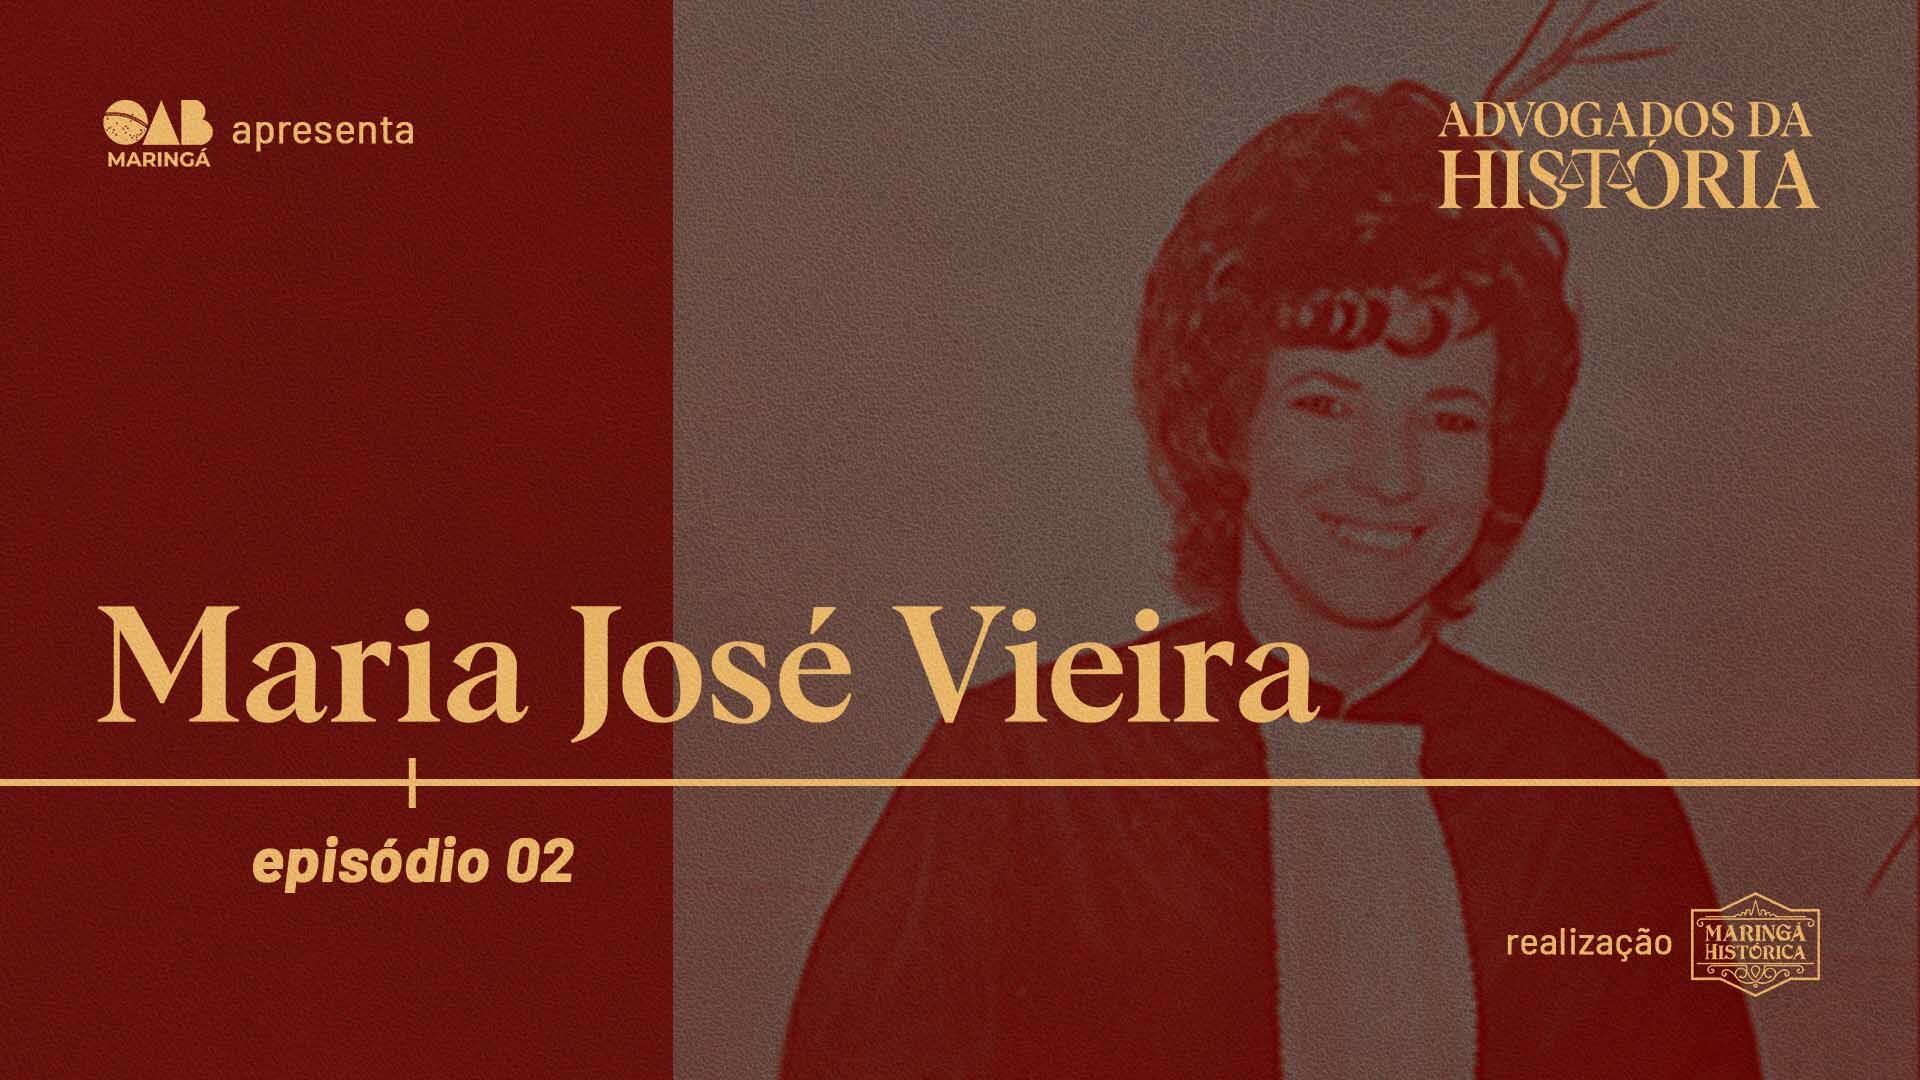 ADVOGADOS DA HISTÓRIA: Maria José Vieira